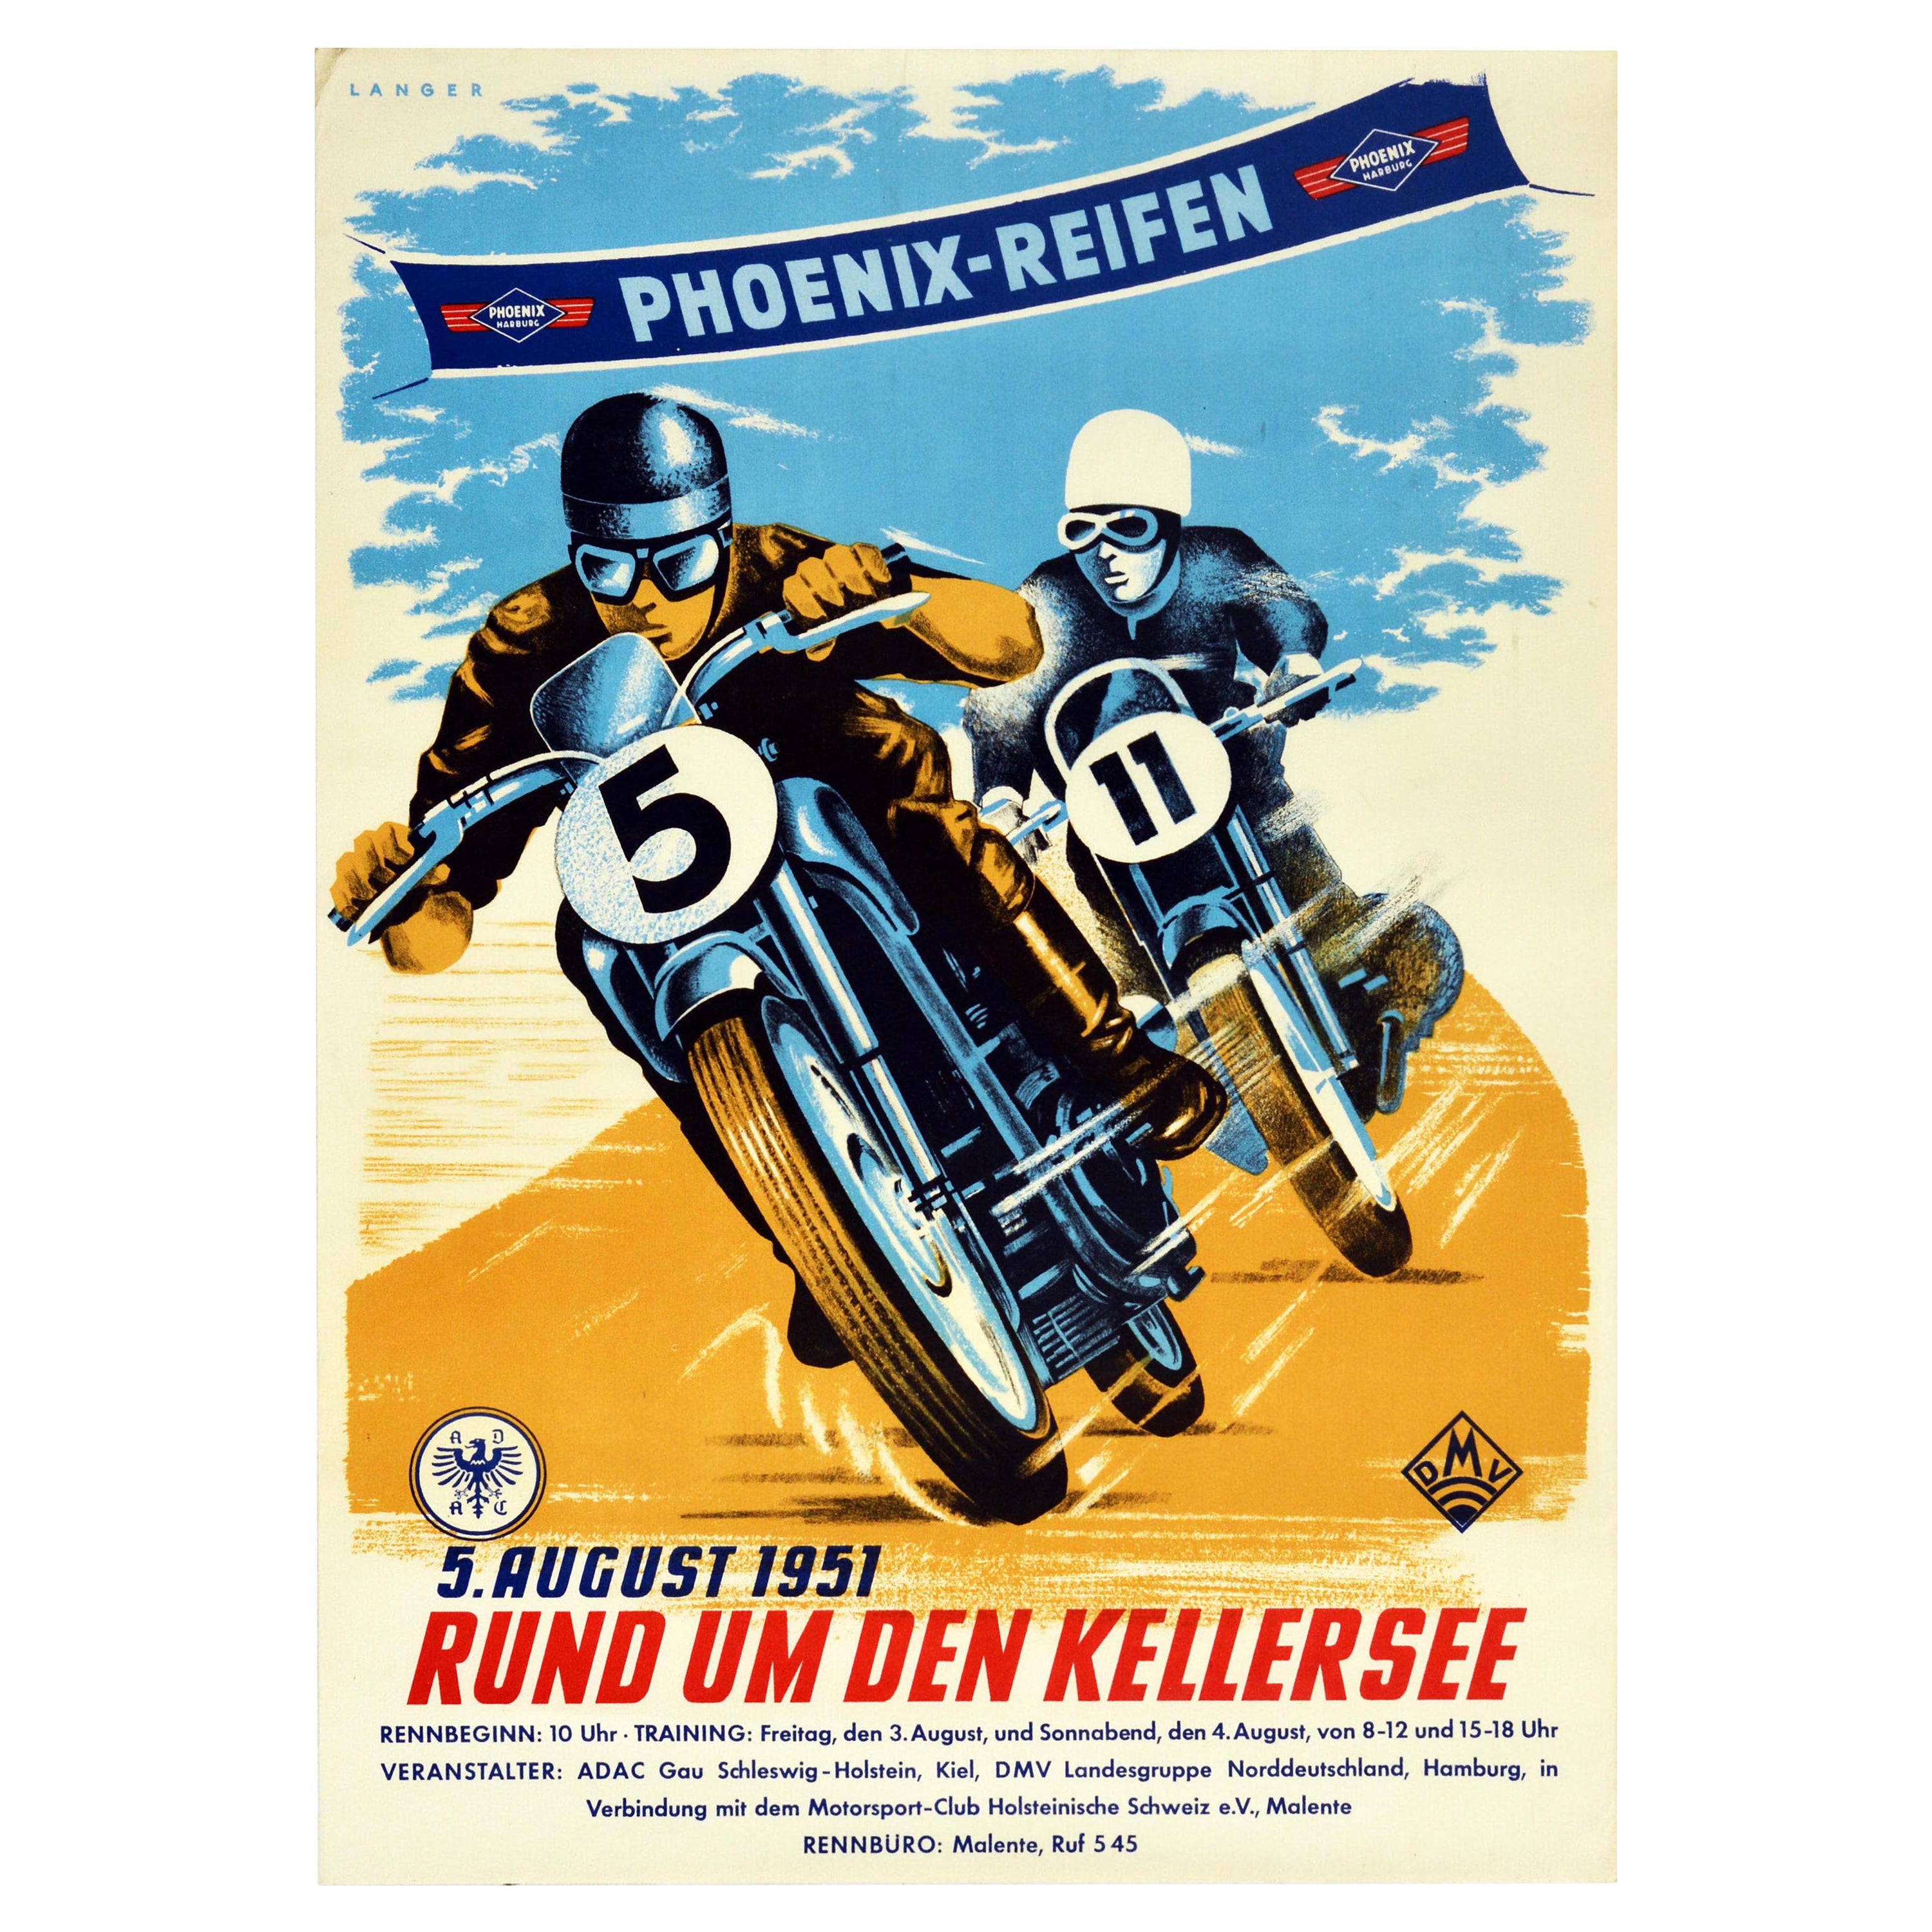 Original Vintage Poster Kellersee Lake Phoenix Reifen Tires Motorcycle Race Art